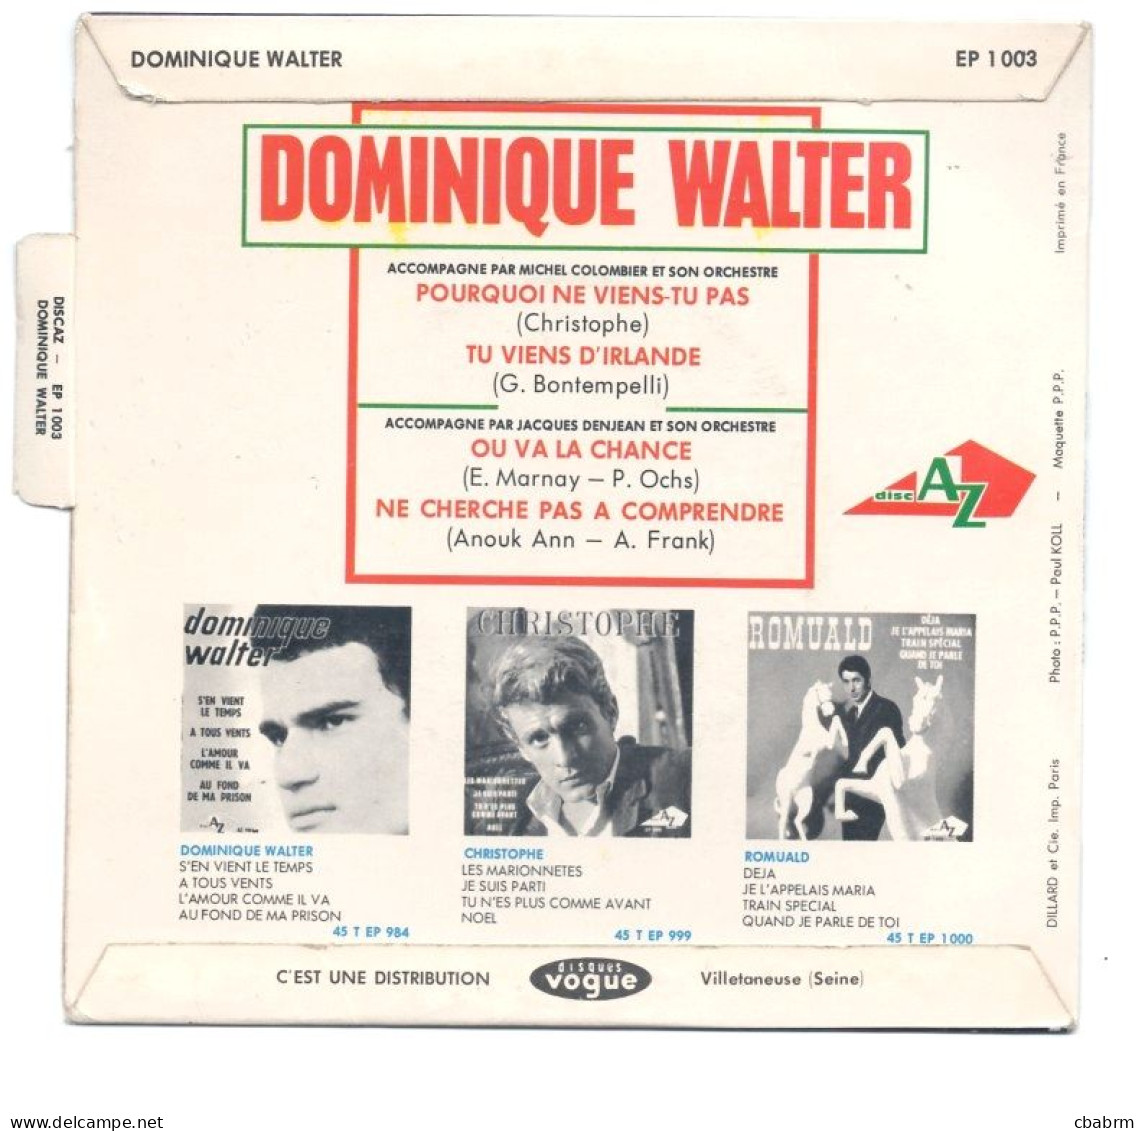 EP 45 TOURS DOMINIQUE WALTER POURQUOI NE VIENS-TU PAS ( Christophe ) LANGUETTE - Otros - Canción Francesa